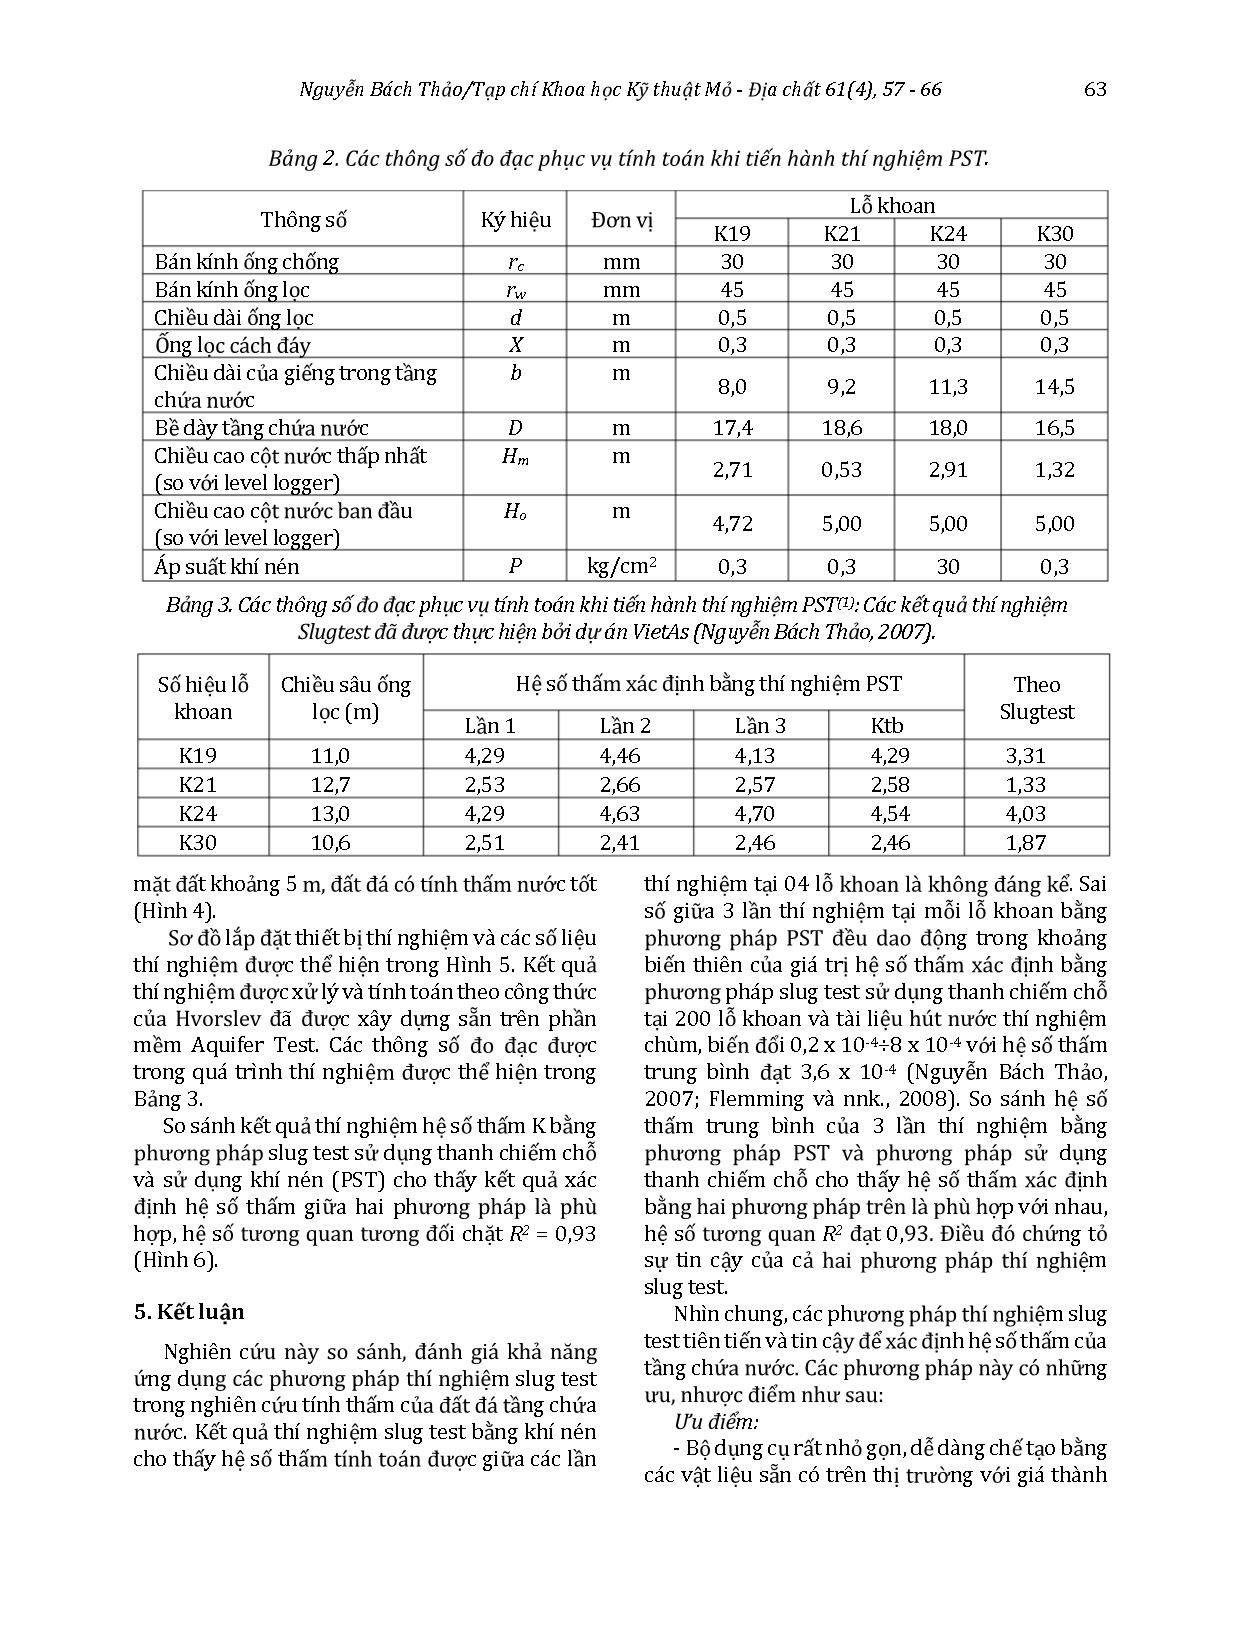 So sánh các phương pháp thí nghiệm slug test trong xác định hệ số thấm cho tầng Holocen vùng Đan Phượng trang 7